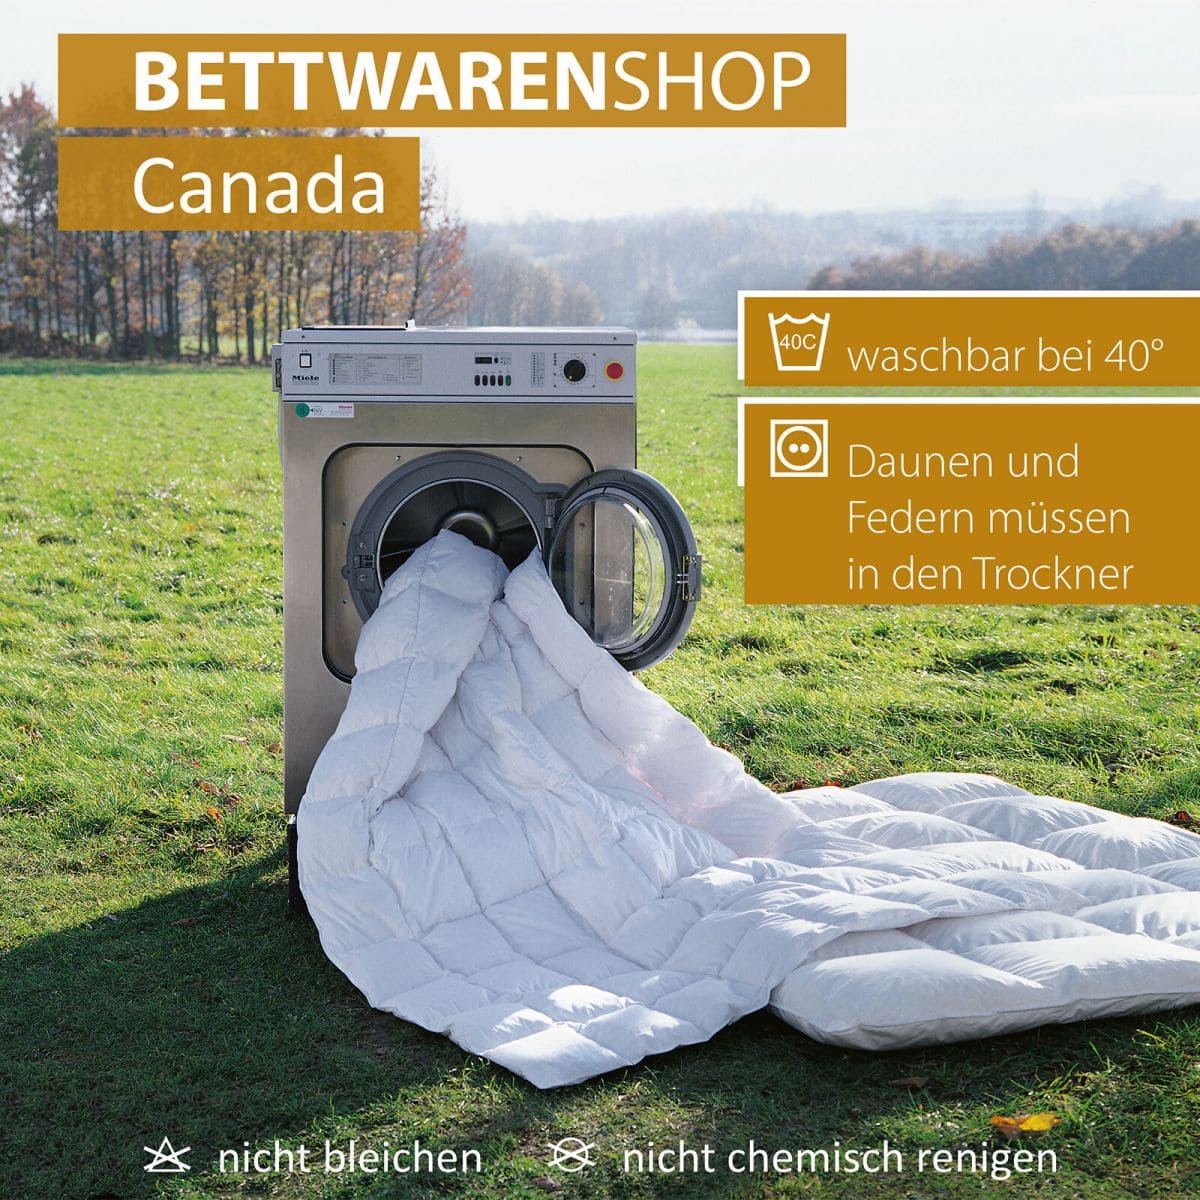 BettwarenShop Daunendecke Canada warm, Füllung: 100% Daunen günstig online  kaufen bei Bettwaren Shop